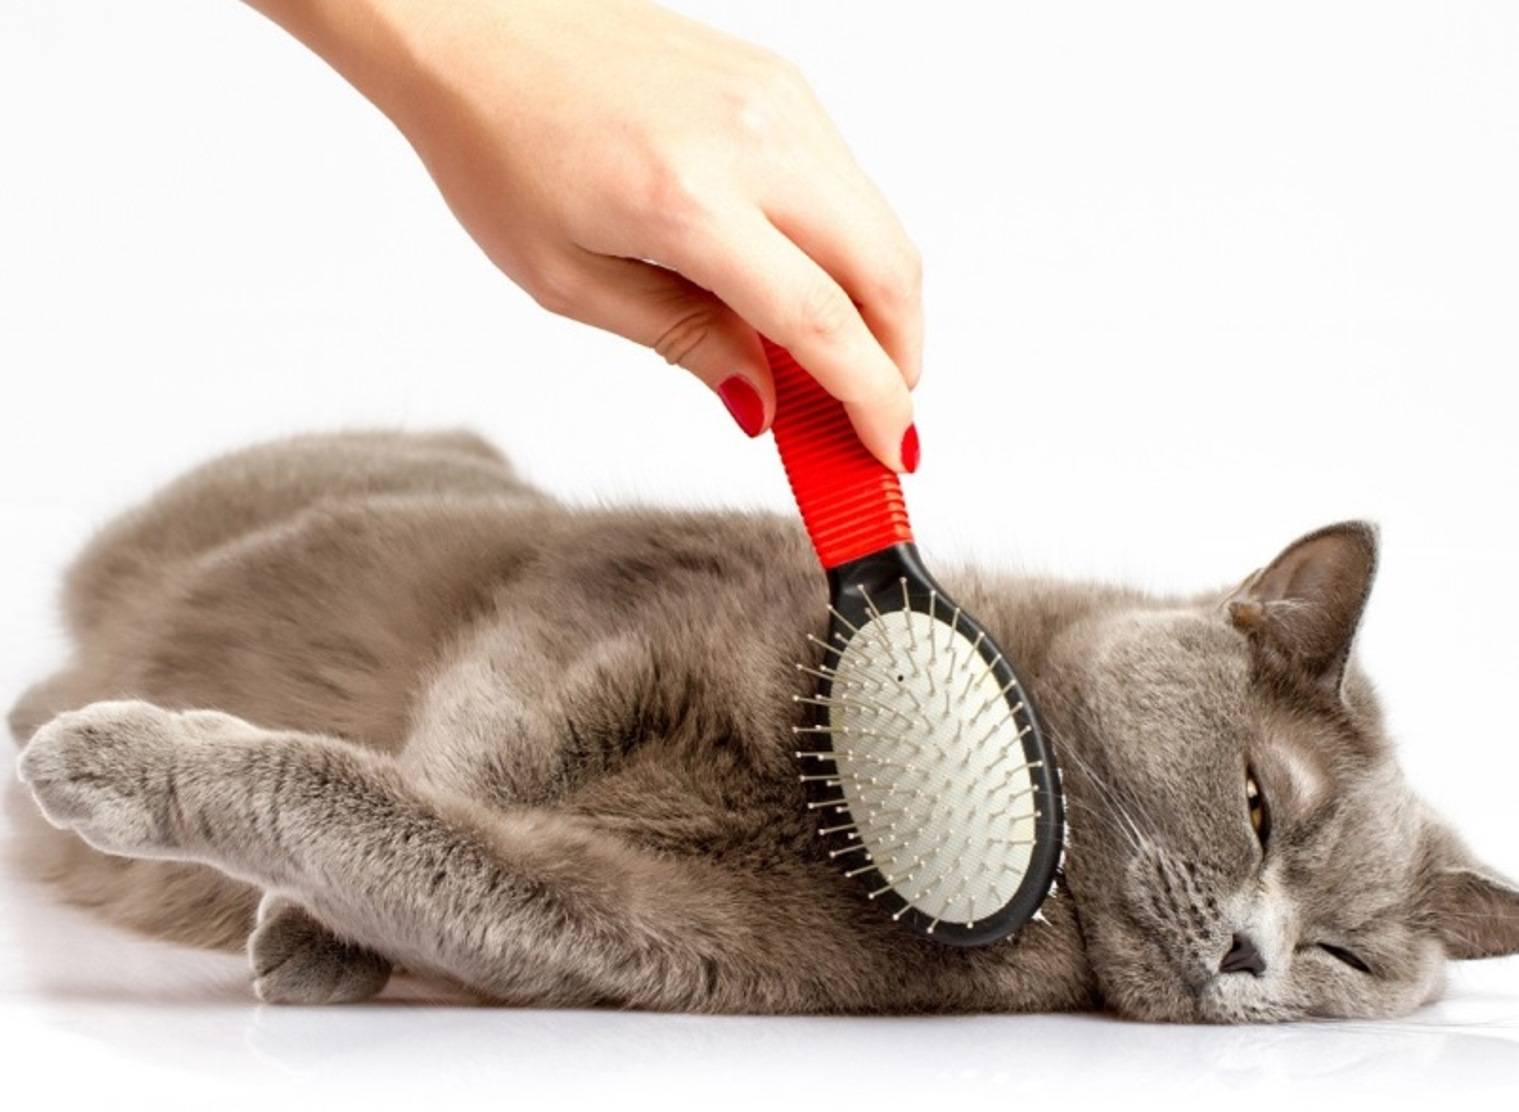 Машинка для стрижки кошек в домашних условиях: полезный инструмент для быстрого груминга